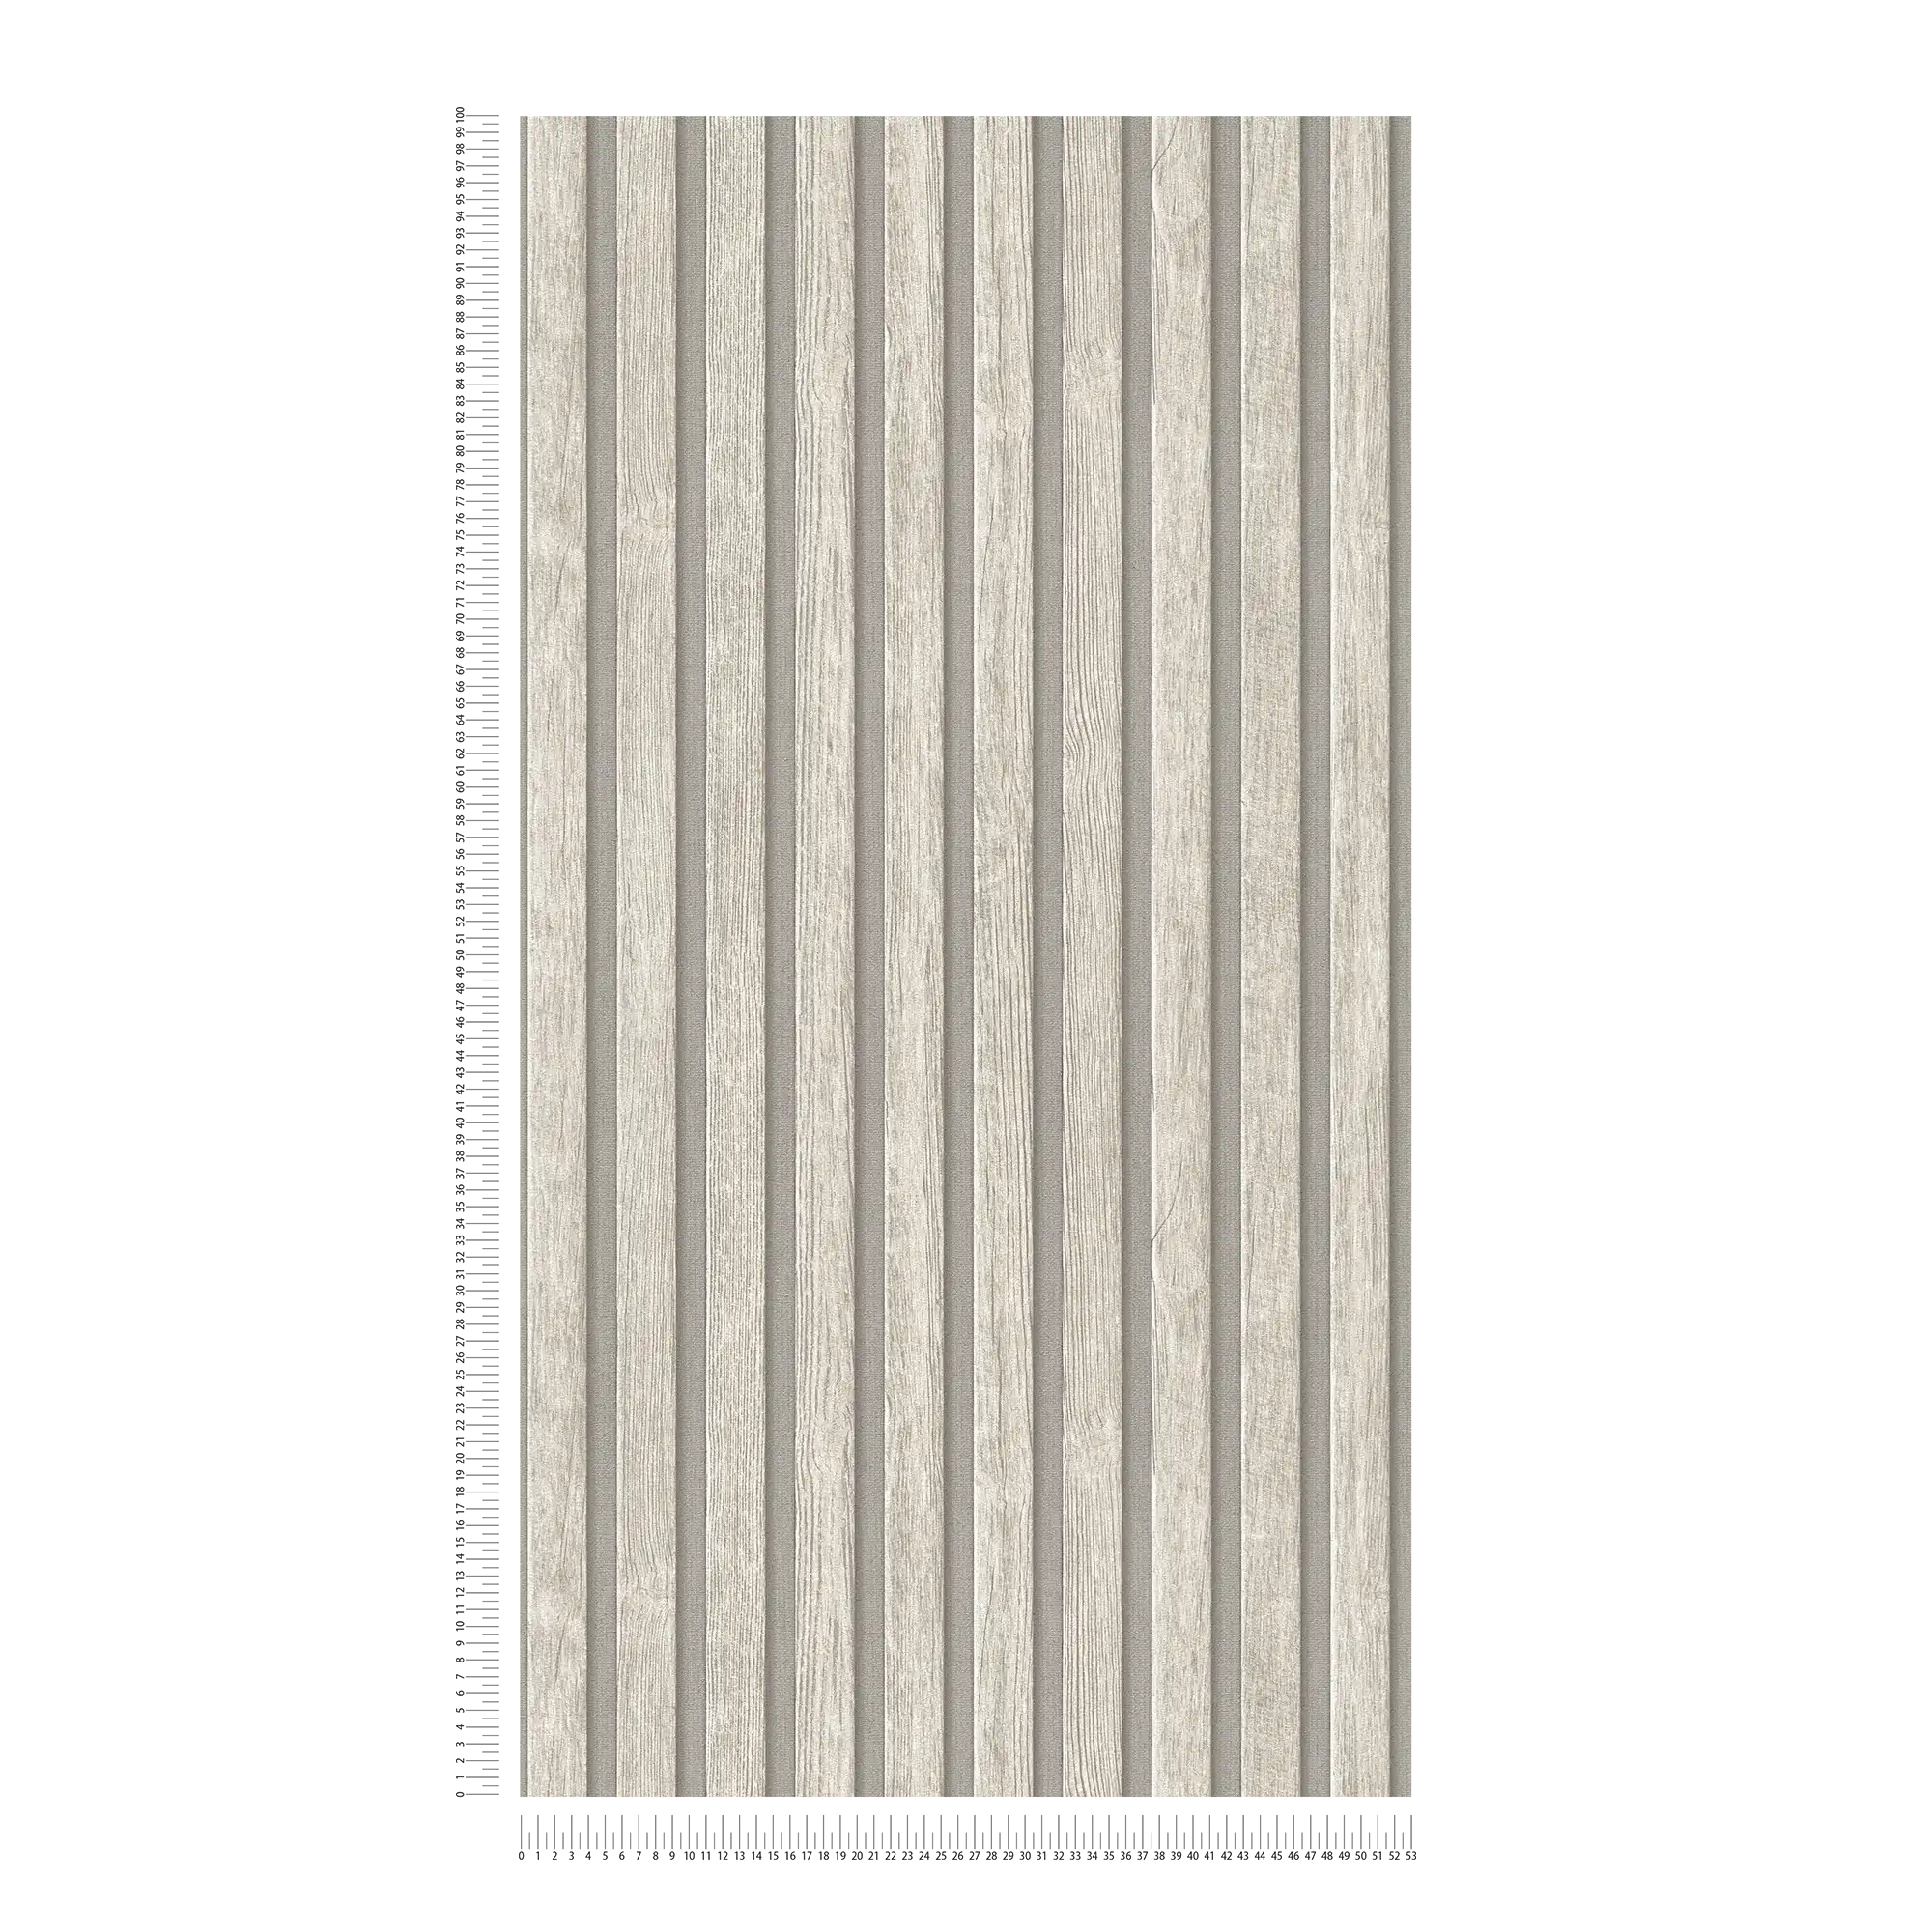             Carta da parati in tessuto non tessuto con motivo a pannelli di legno - grigio, crema
        